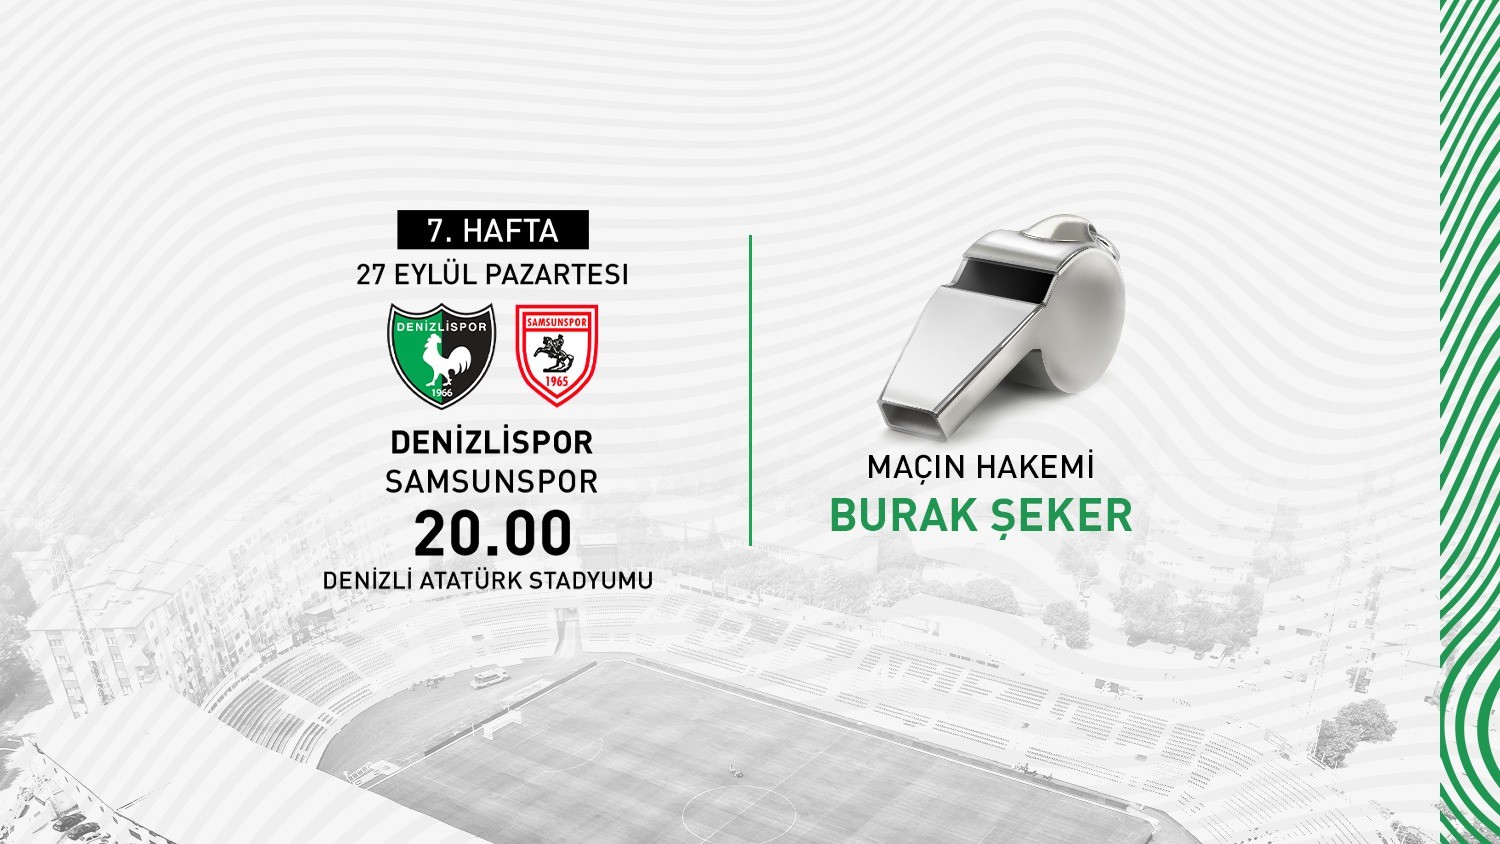 Denizlispor, Samsunspor maçını Burak Şeker’in yönetecek #denizli